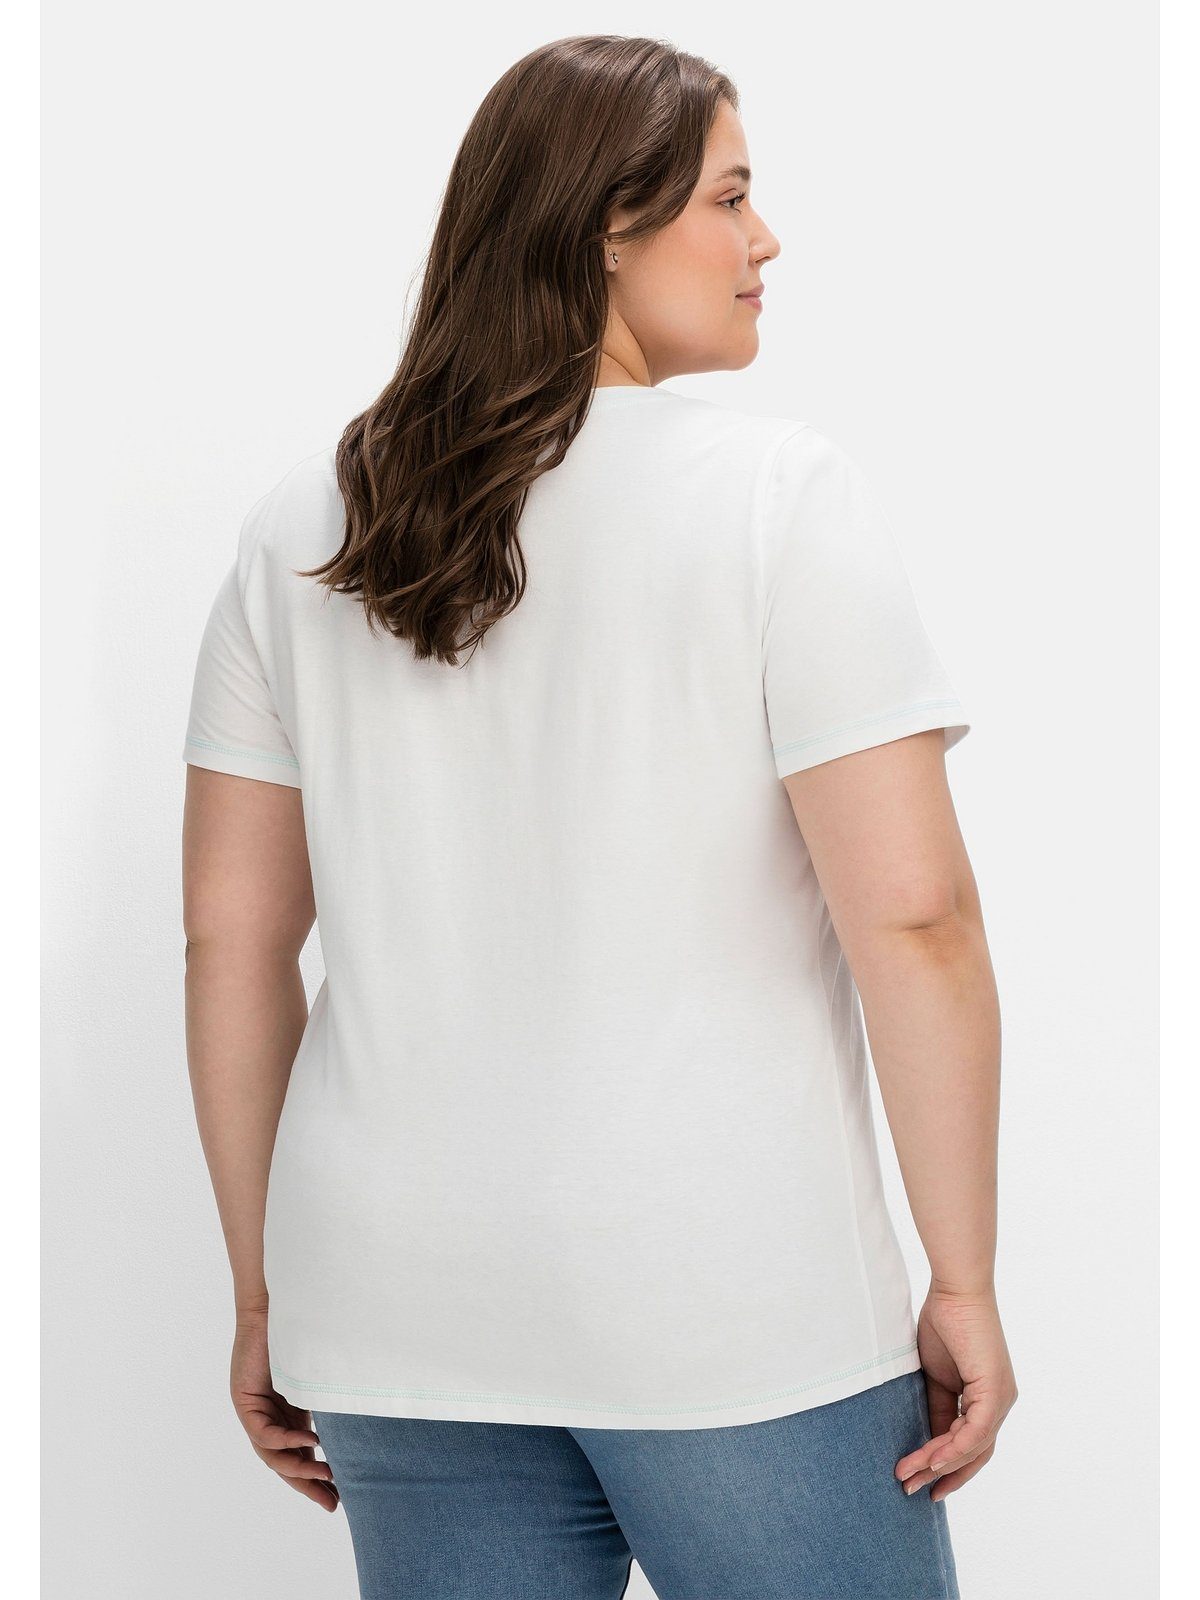 Sheego T-Shirt Große Größen bedruckt tailliert mit leicht weiß Wordingprint